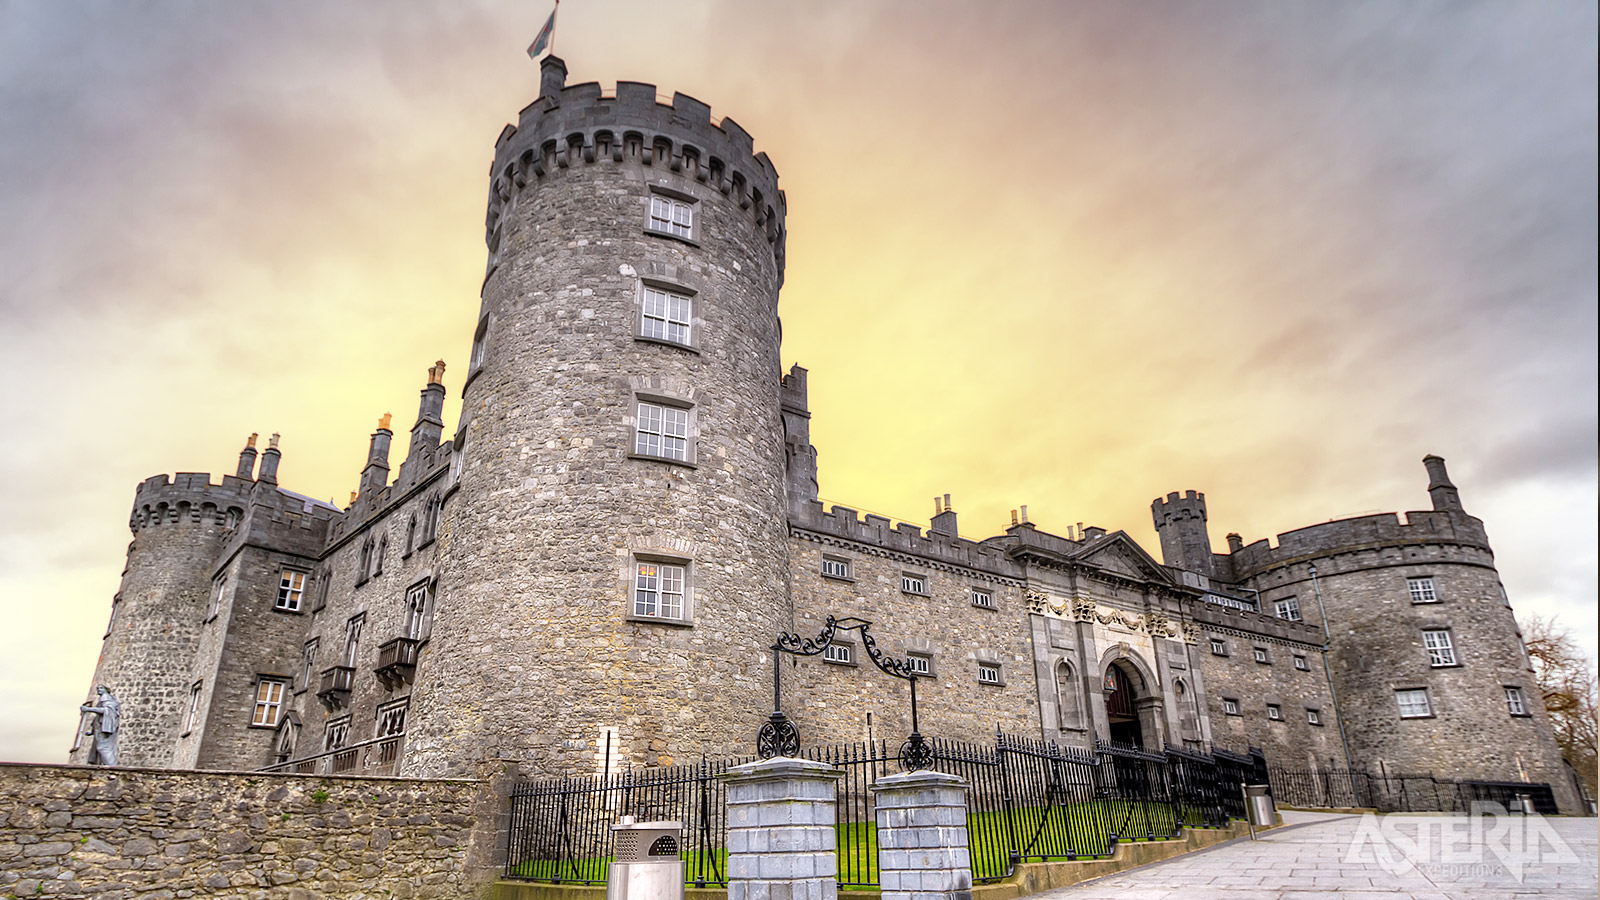 Strongbow, de legendarische Normandische indringer, bouwde in de 12de eeuw een fort op de plaats waar nu Kilkenny Castle staat